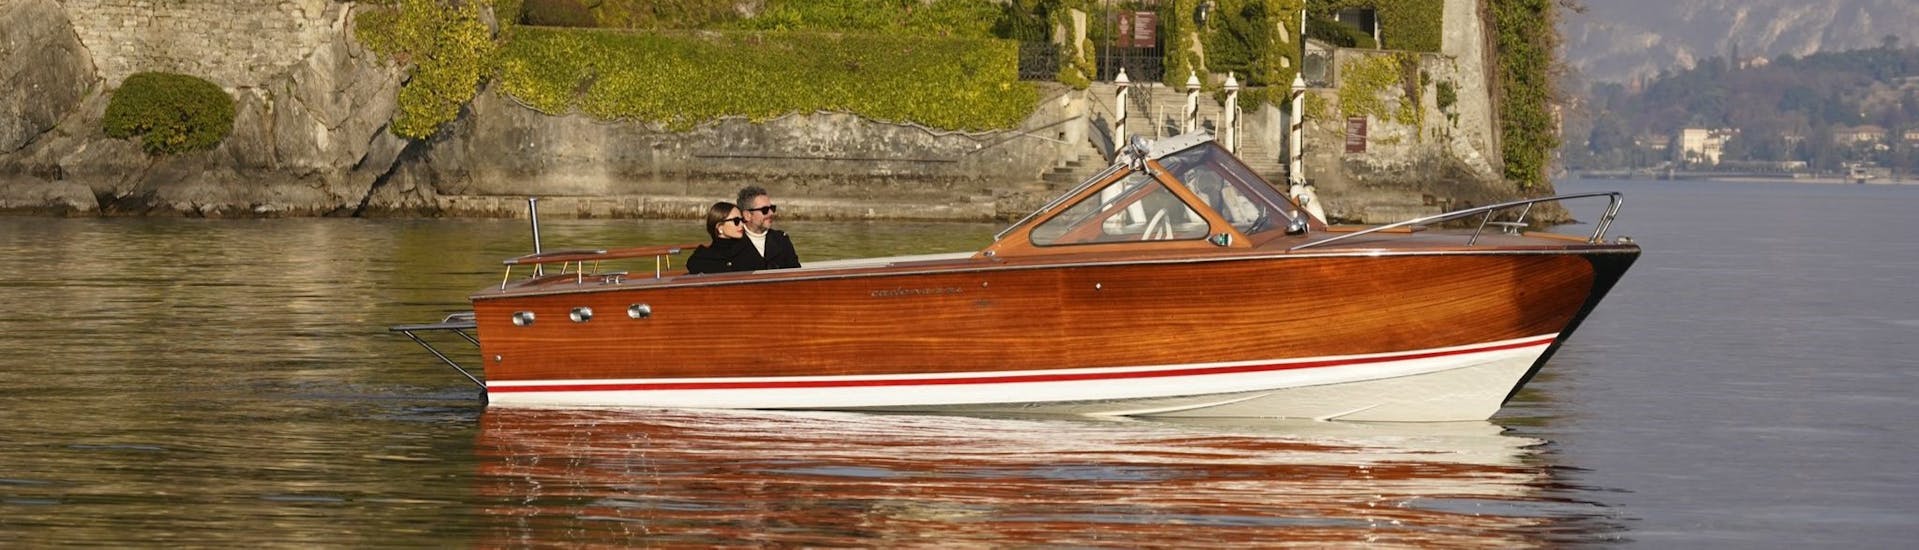 Das Holzboot bei der Privaten Vintage-Bootstour ab Como auf dem Comer See mit Toast an Bord.